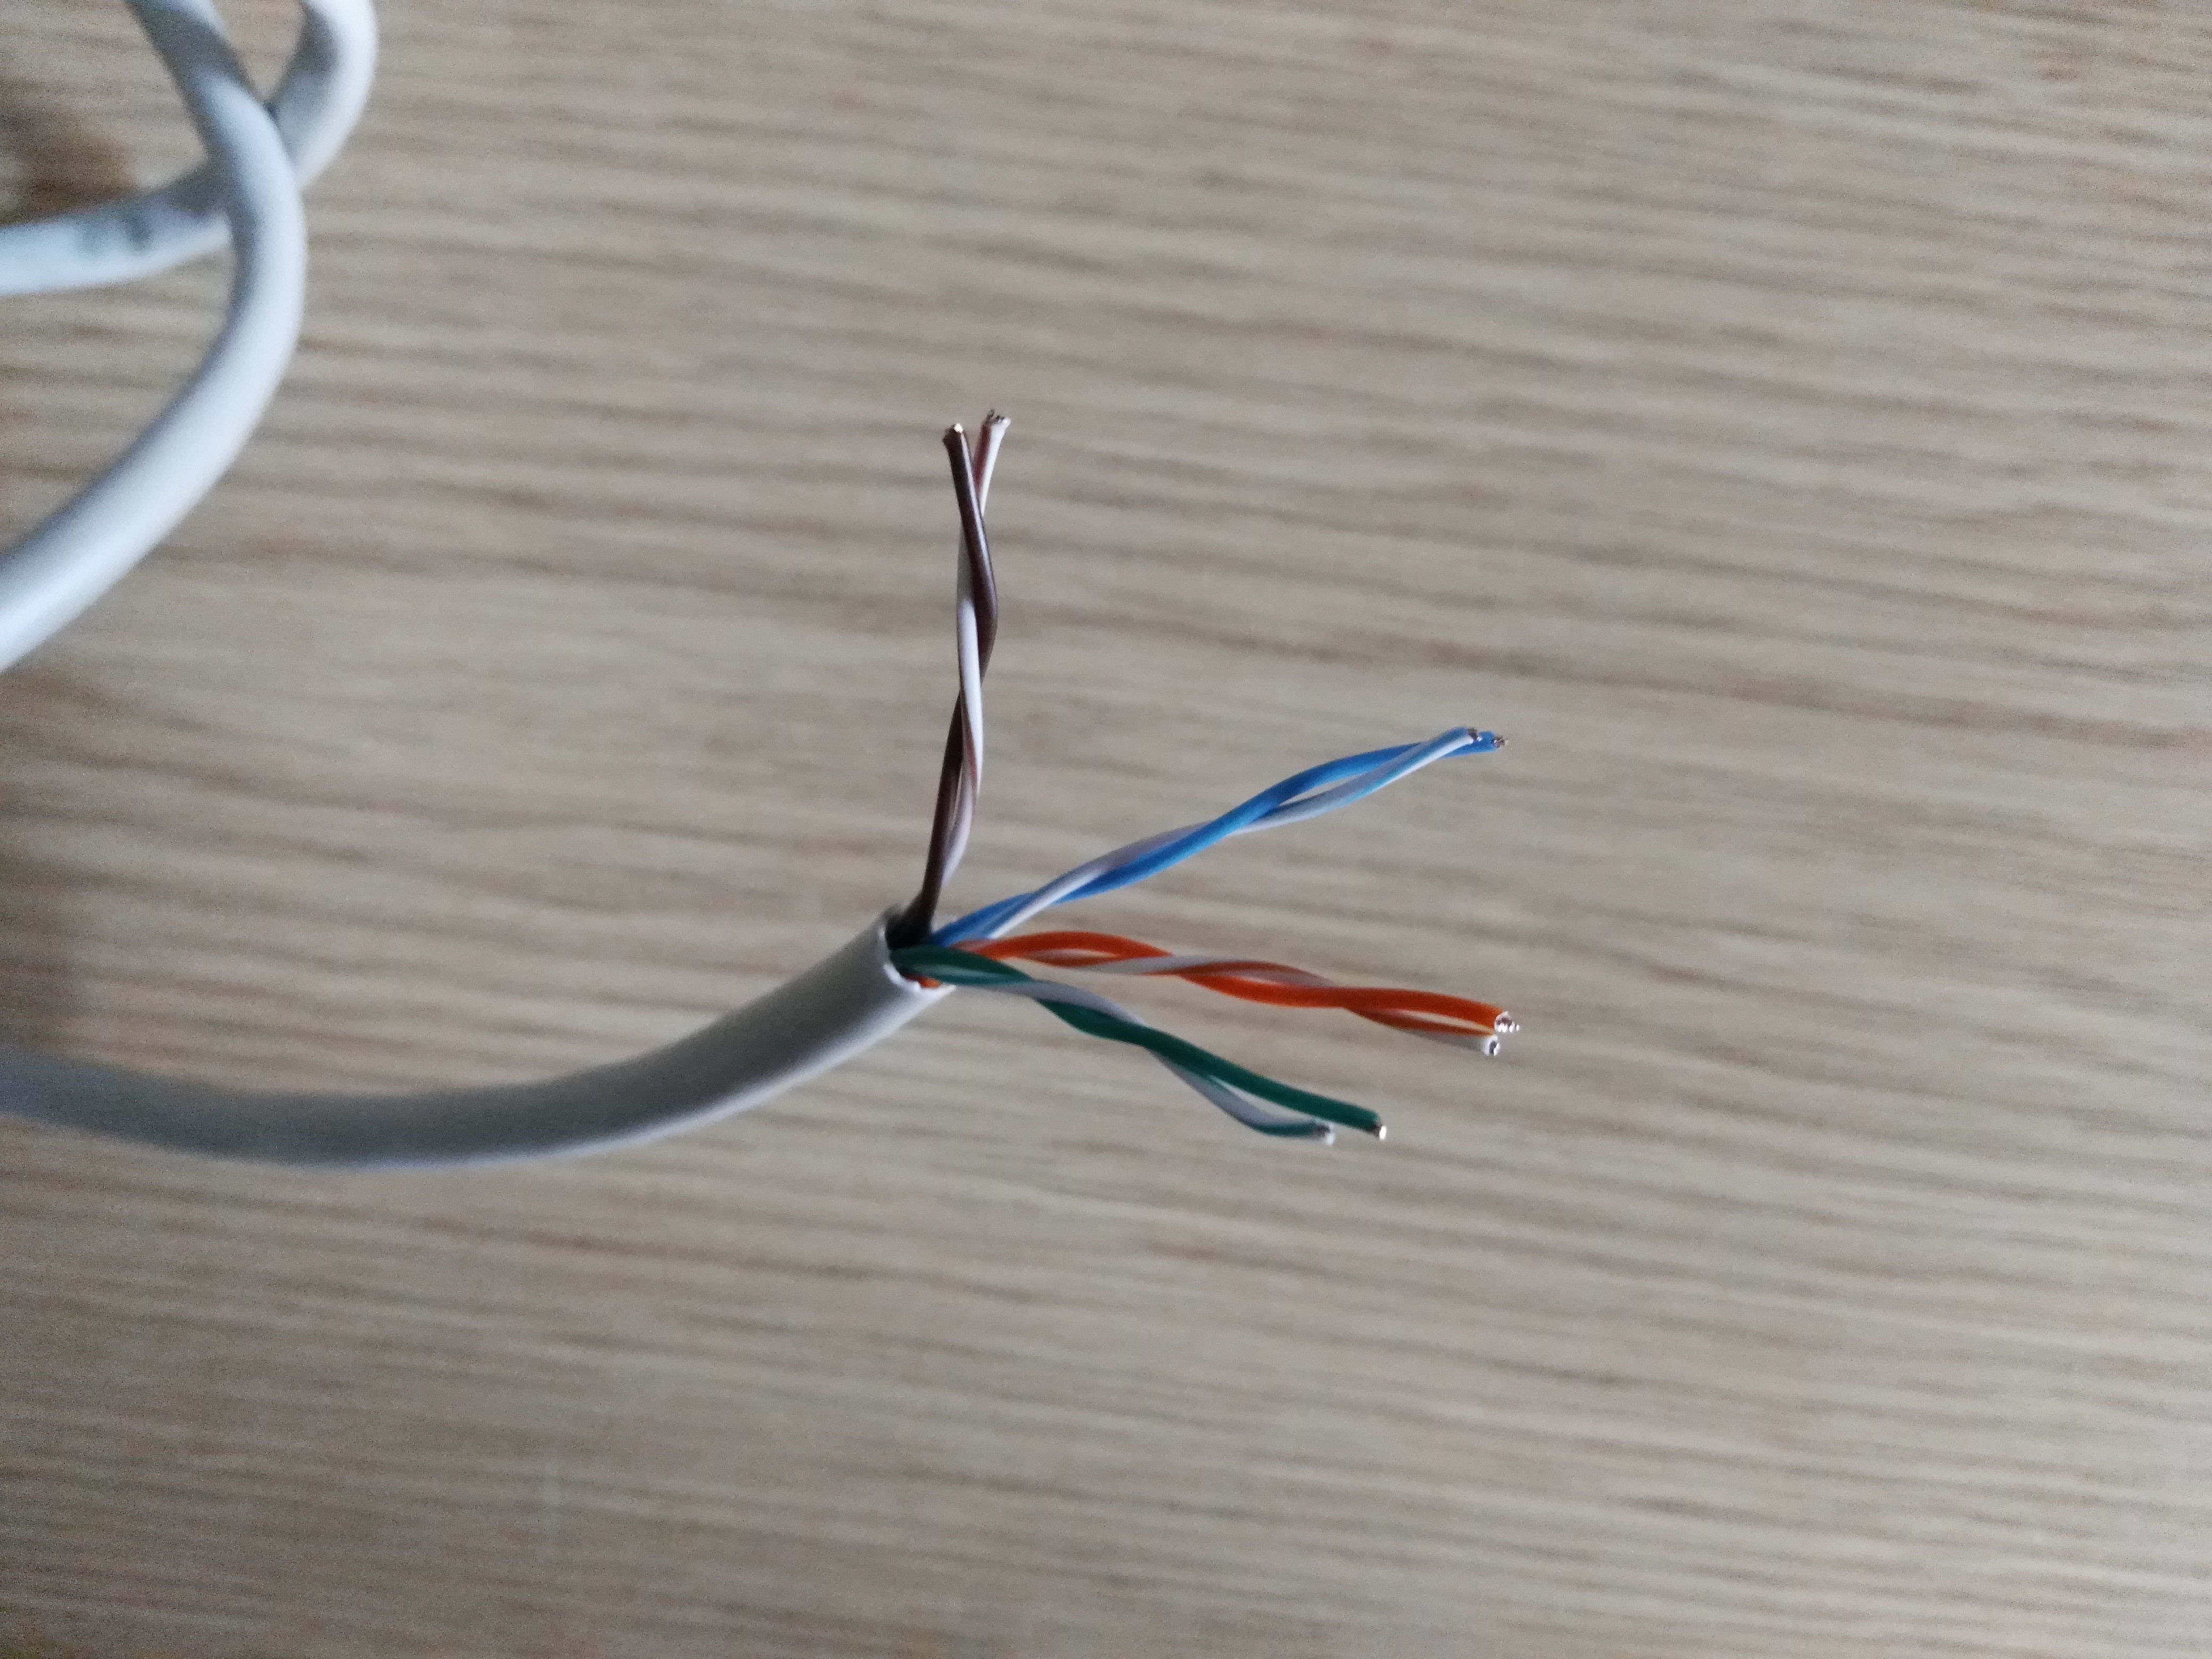 Cable Ethernet de 3 metros, ideal para la conexión de Modem y